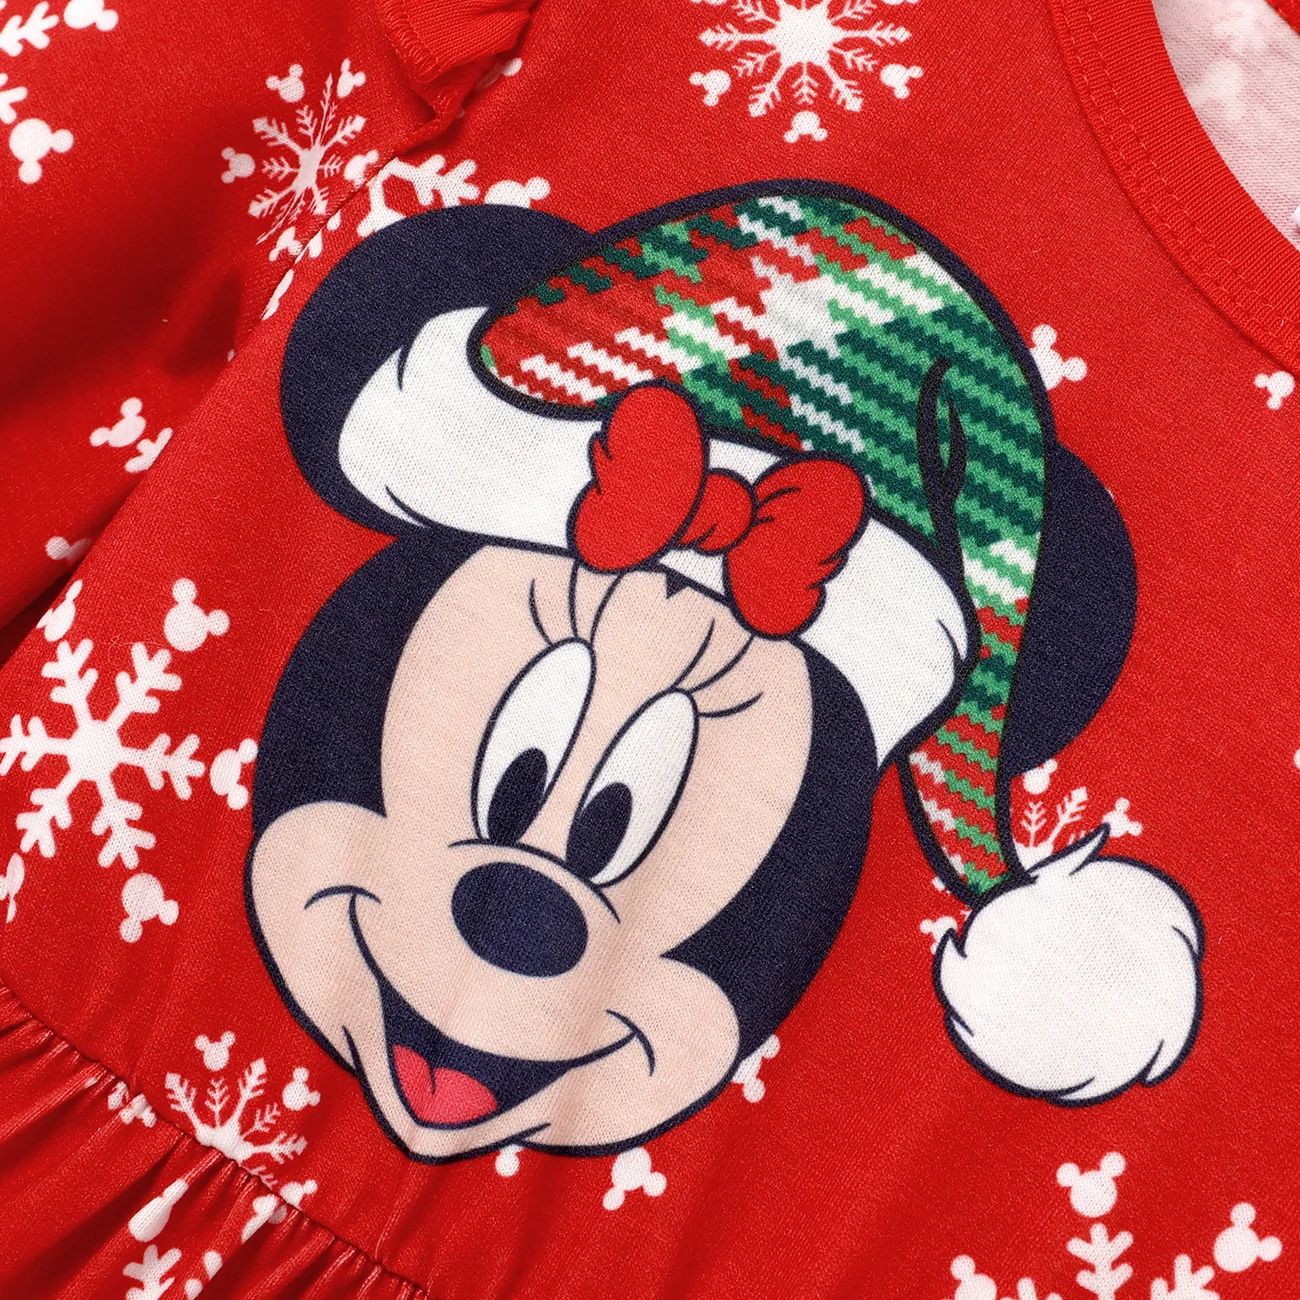 Disney Mickey and Friends Weihnachten 2 Stück Kleinkinder Mädchen Flatterärmel Süß T-Shirt-Sets rot big image 1